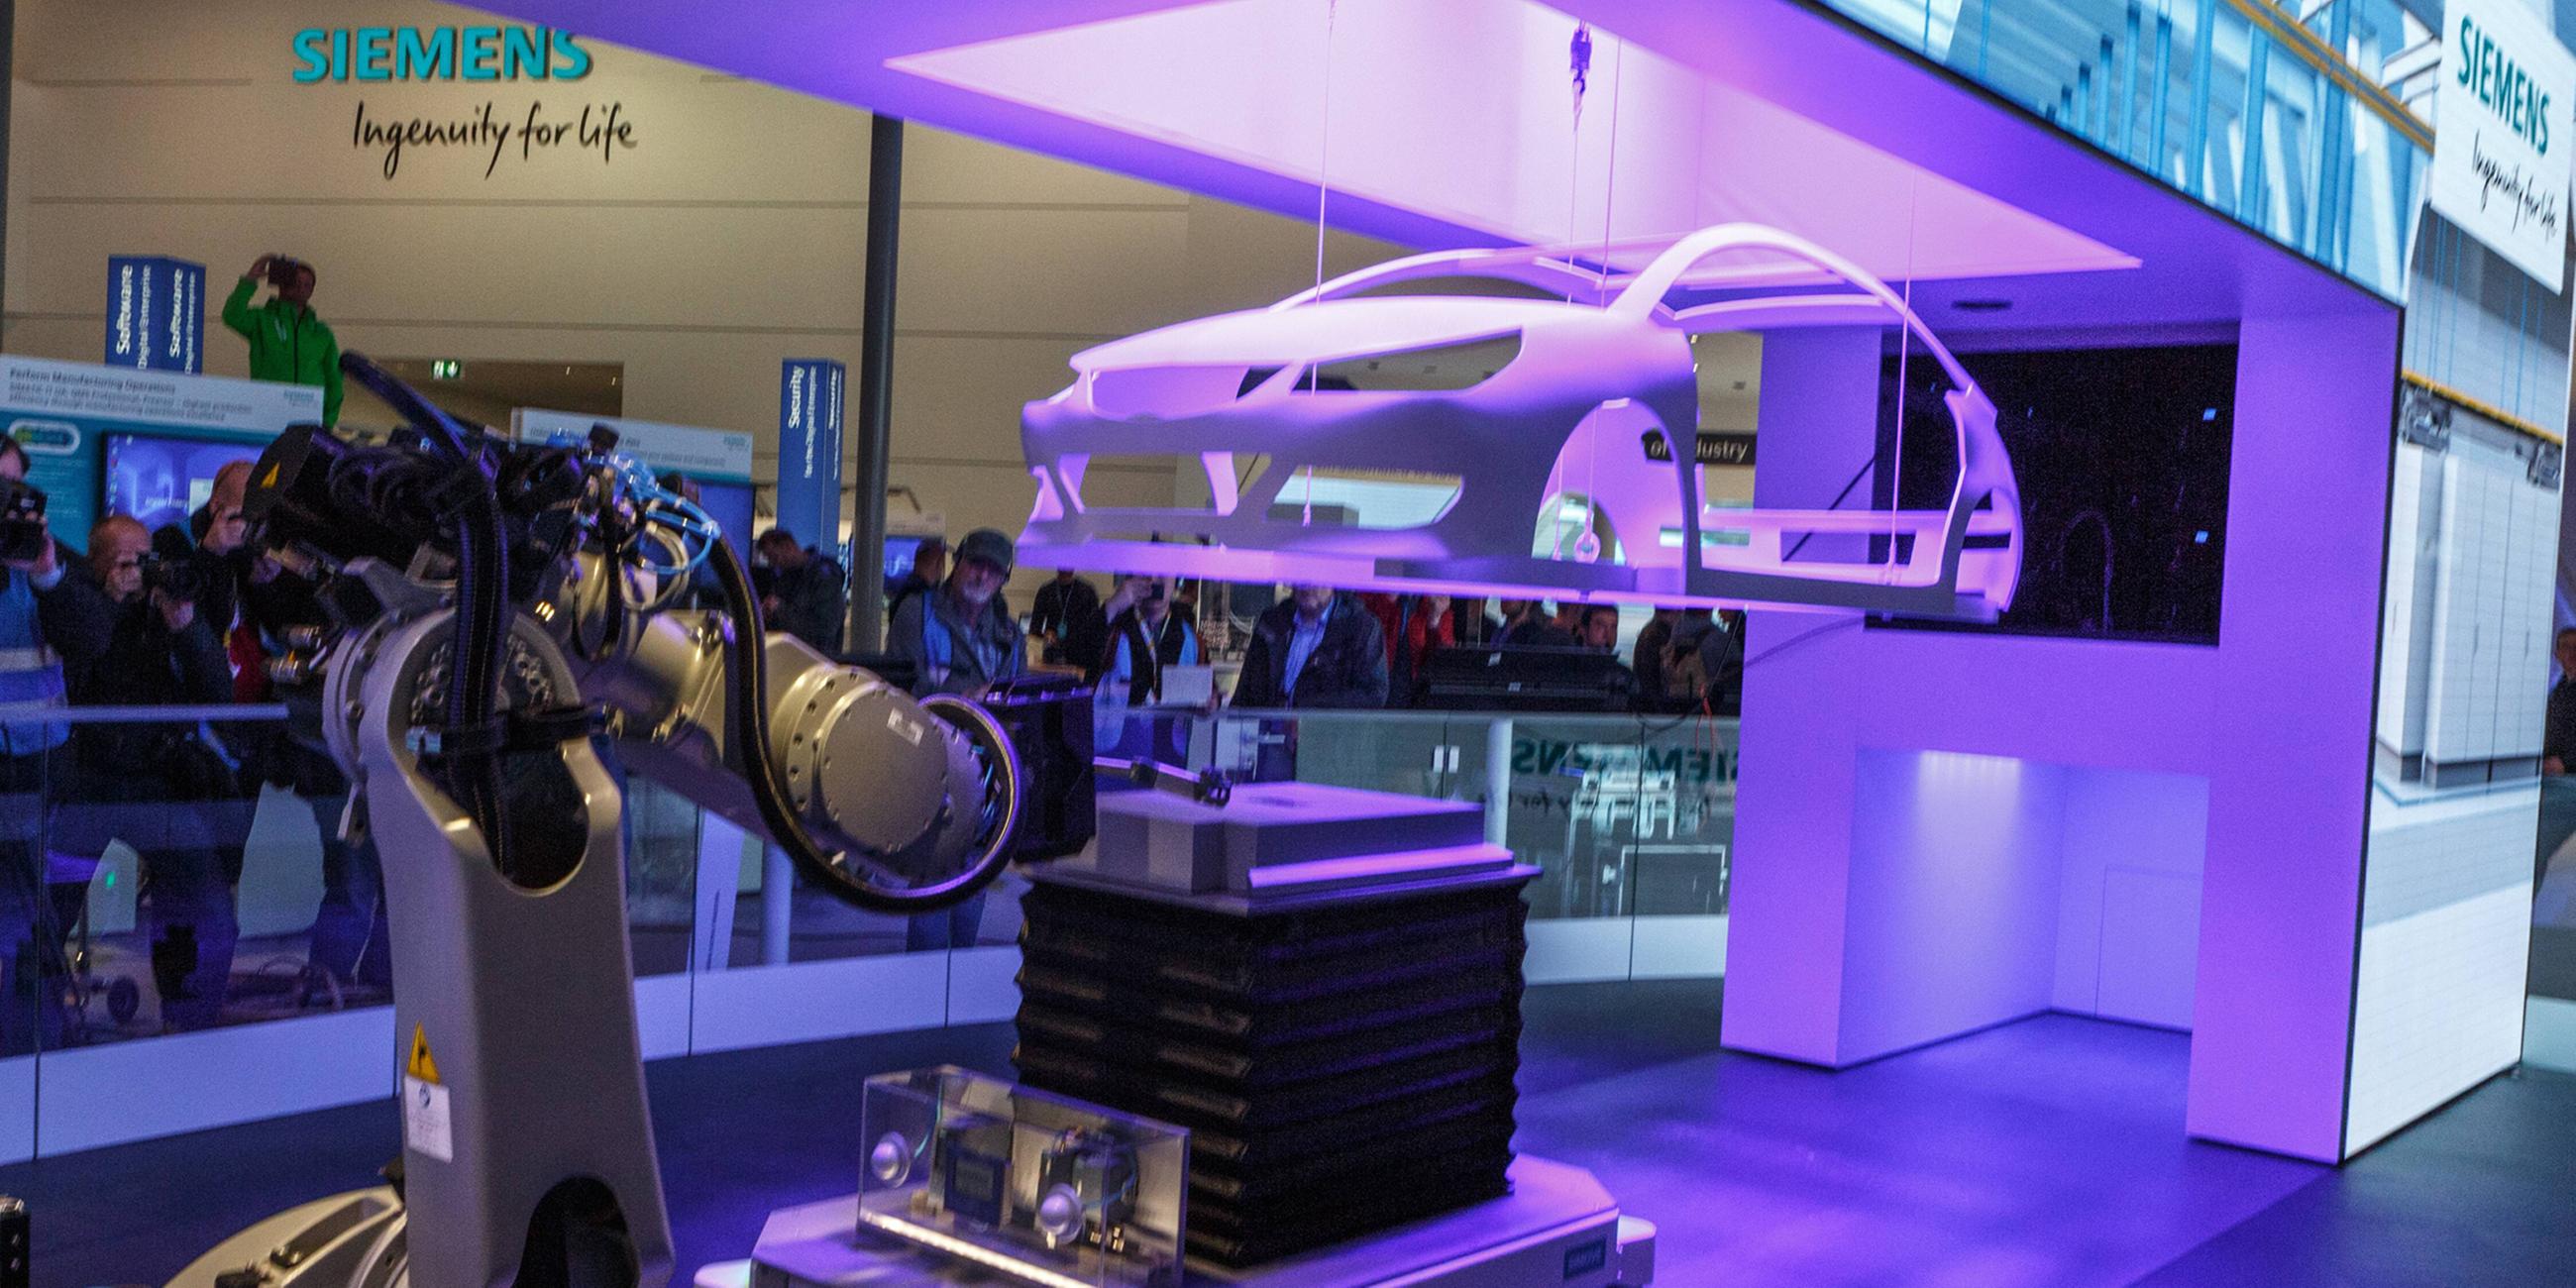 Archiv: Siemens AG, Roboter für den Einsatz in der Automobilproduktion 